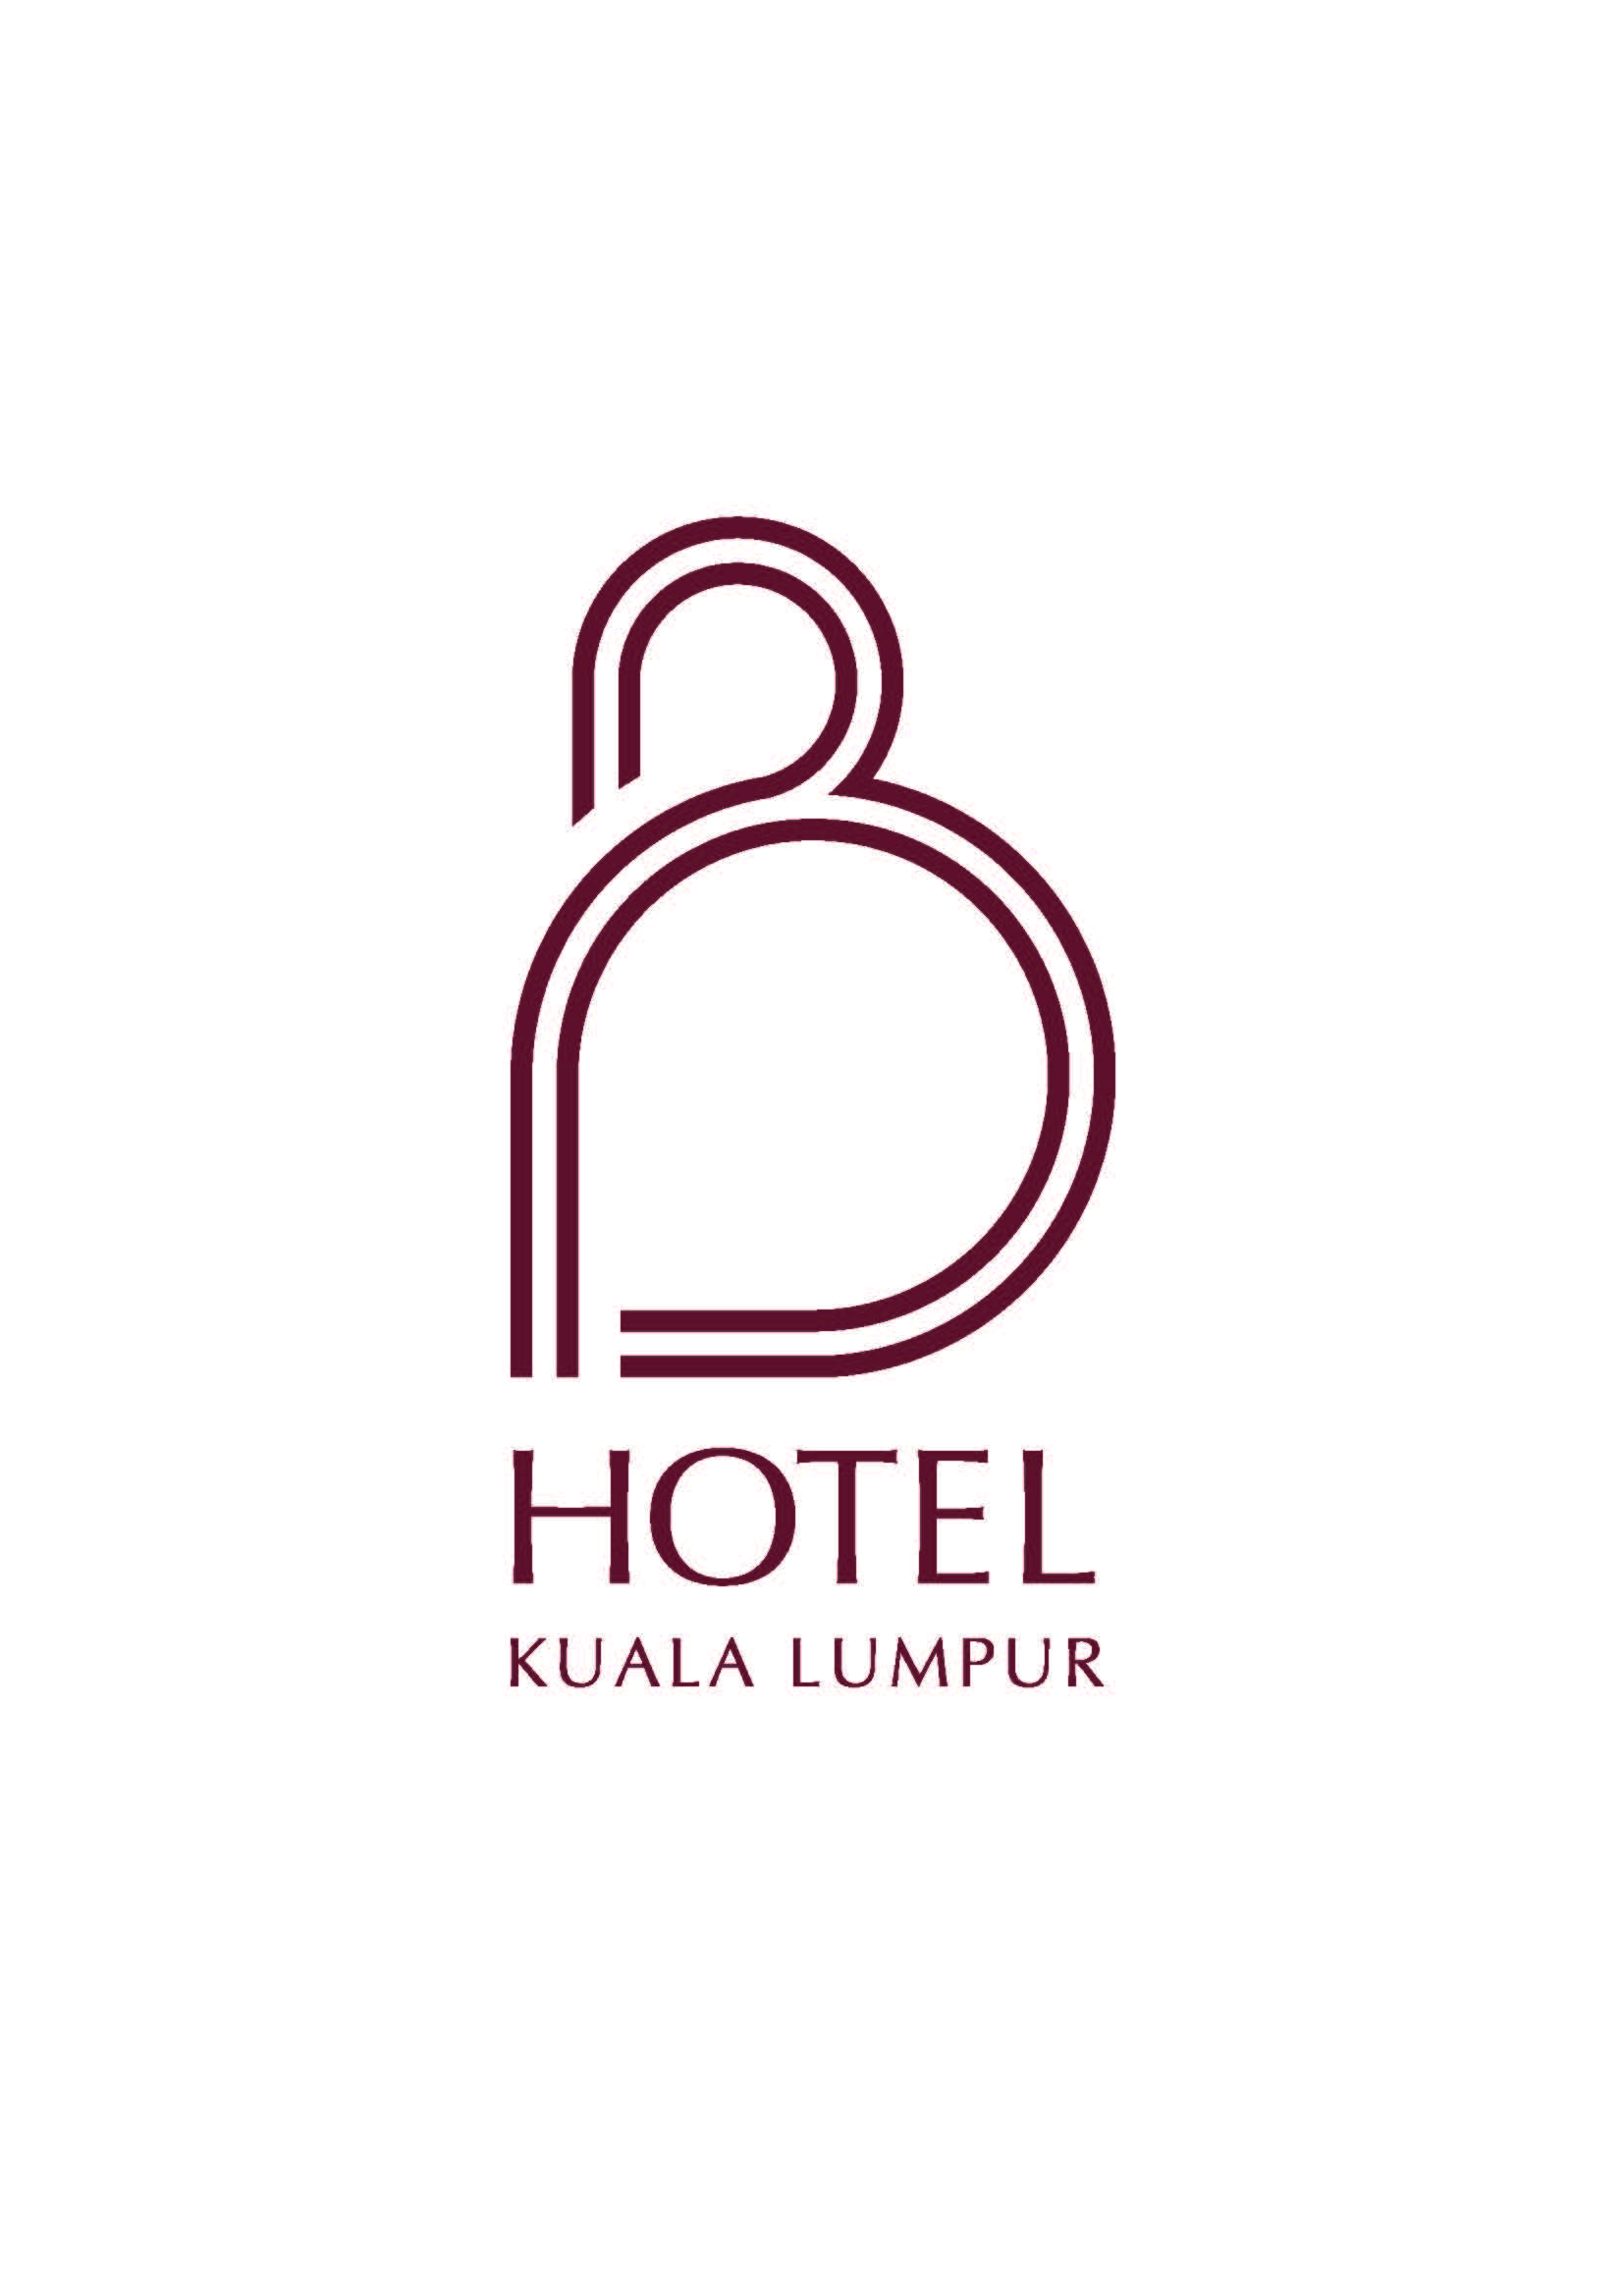 B Hotel